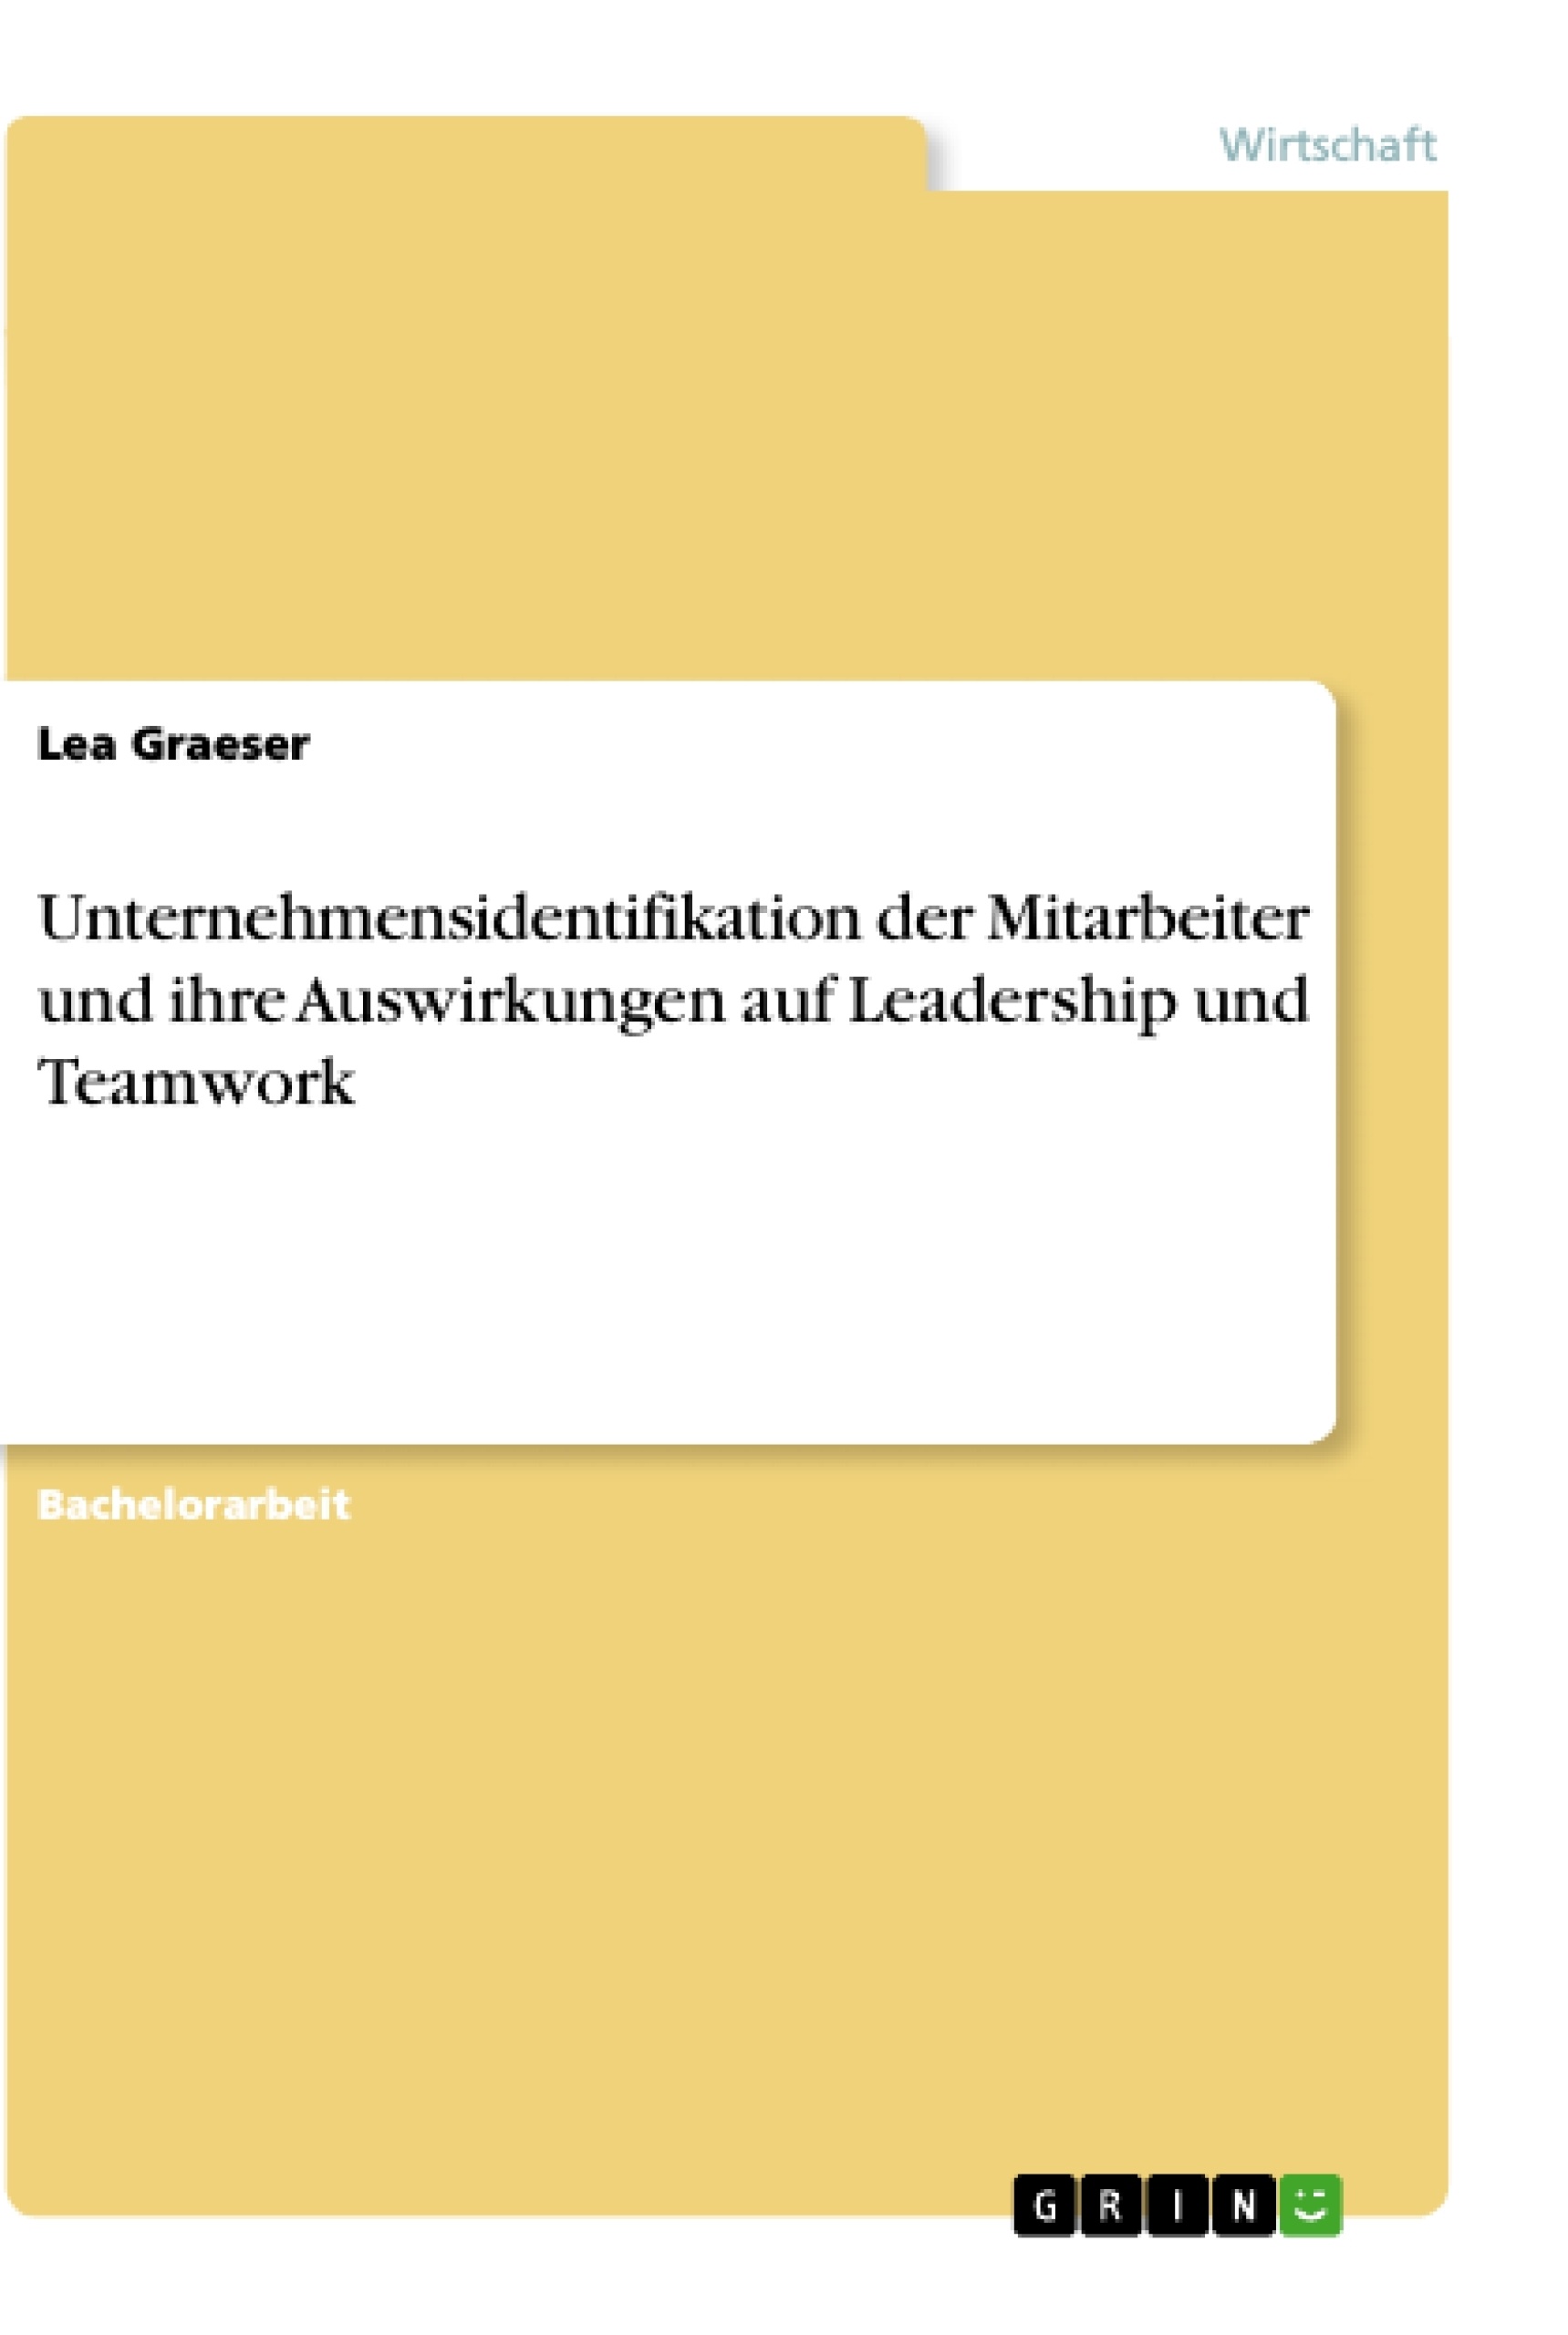 Title: Unternehmensidentifikation der Mitarbeiter und ihre Auswirkungen auf Leadership und Teamwork